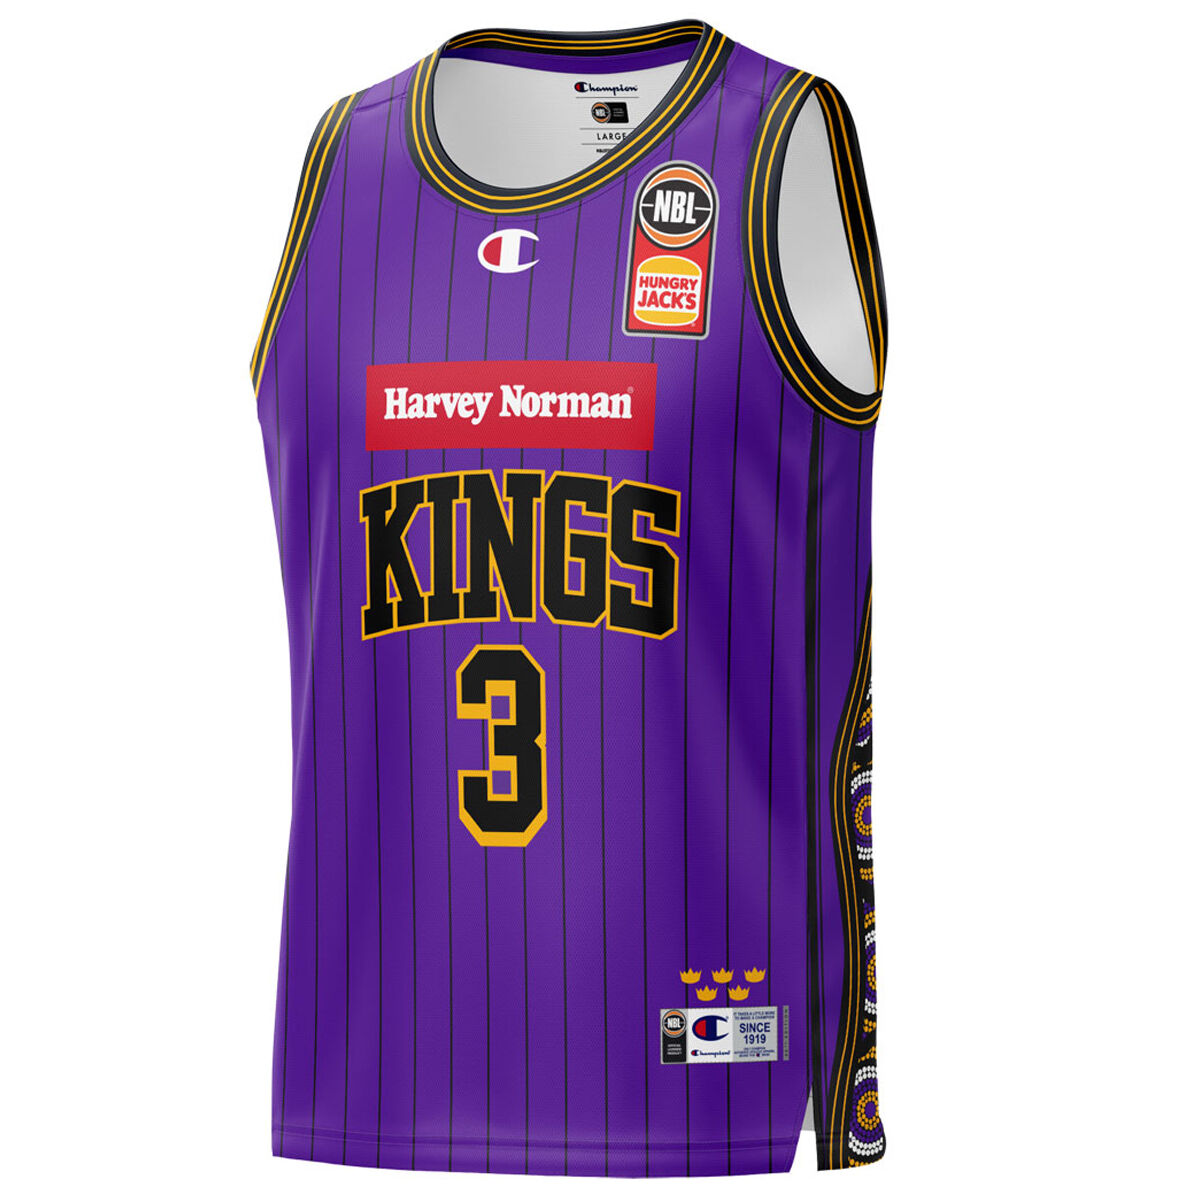 Sydney Kings Jerseys & Teamwear, NBL Merchandise